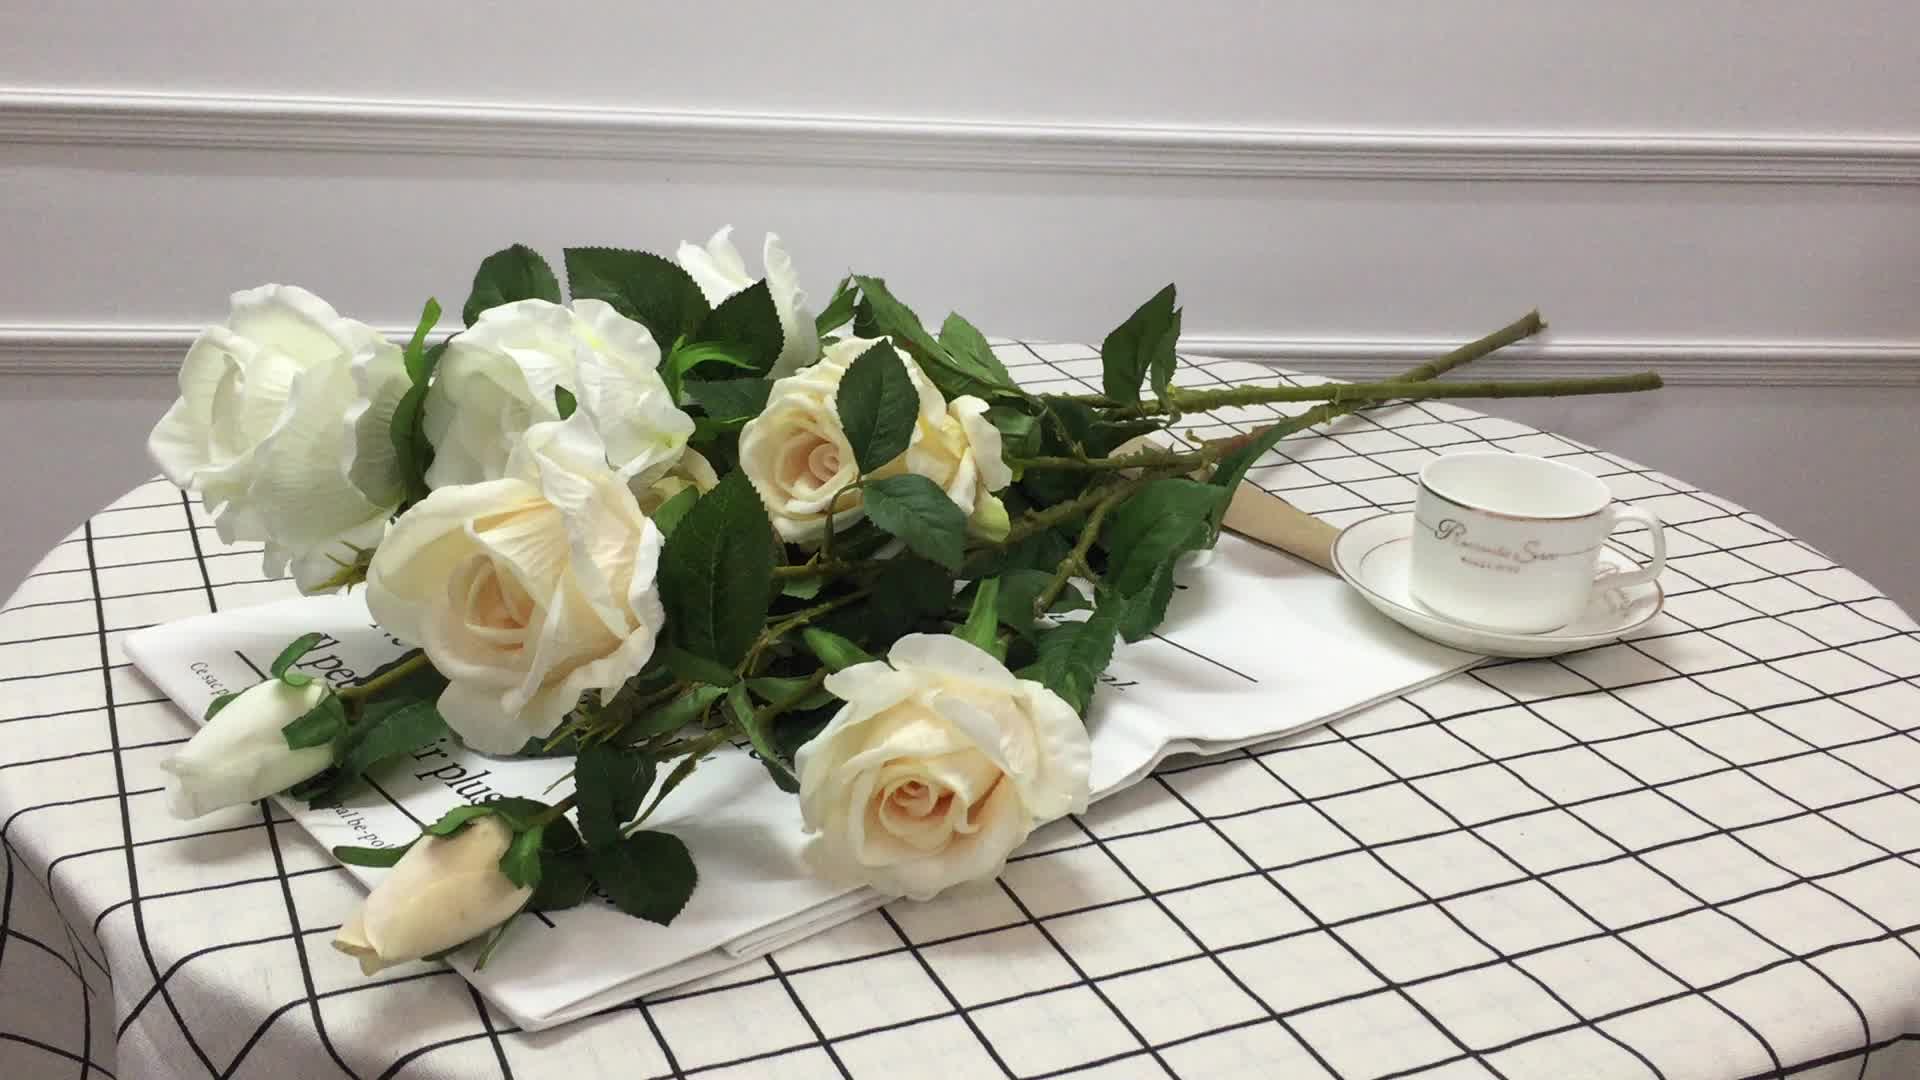 3 розы белых лягут на стол